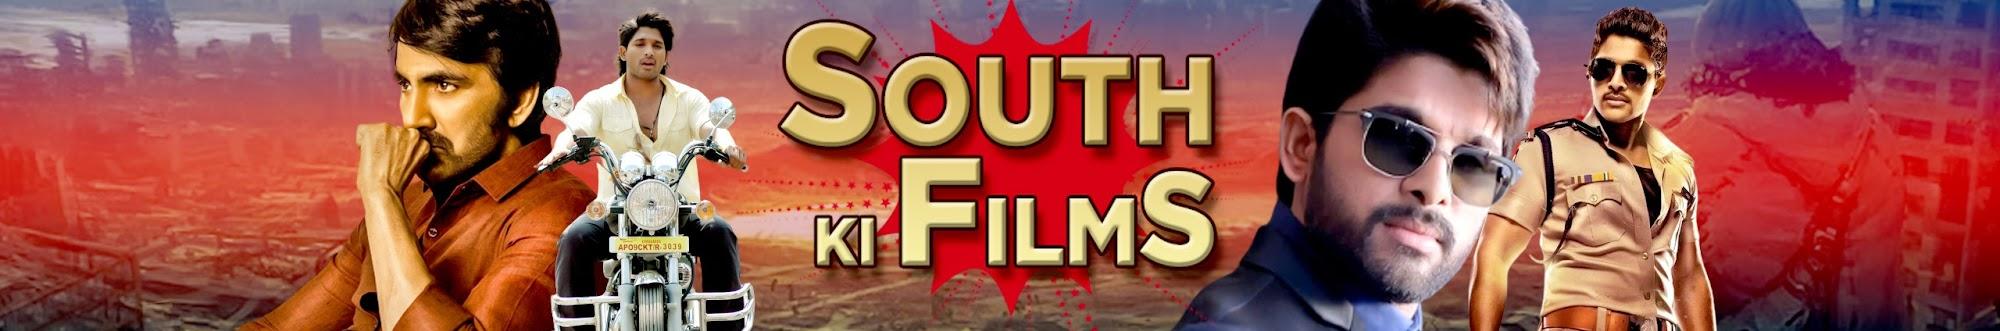 South Ki Films